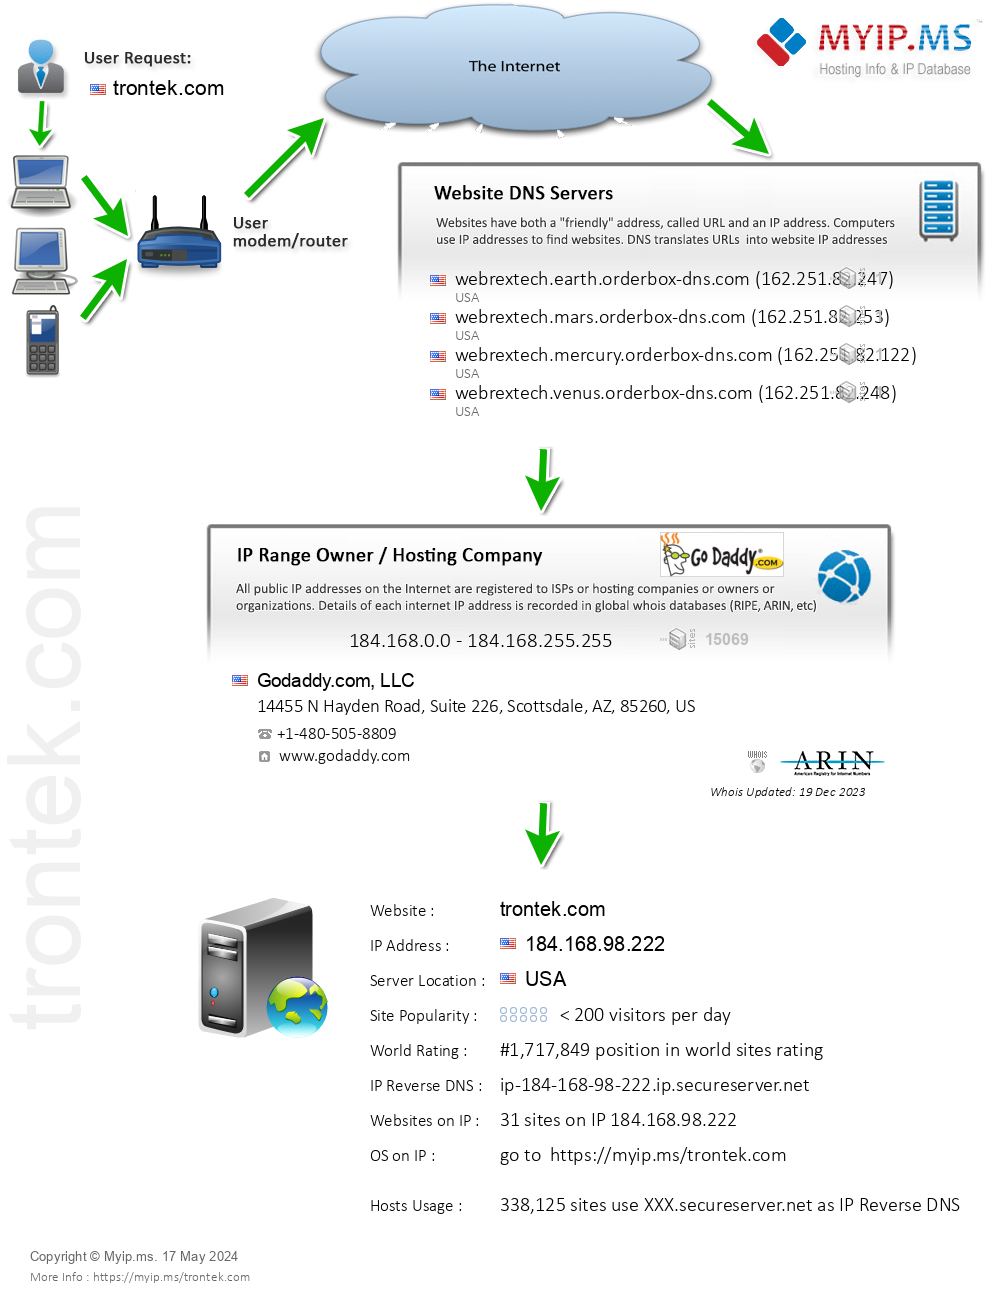 Trontek.com - Website Hosting Visual IP Diagram